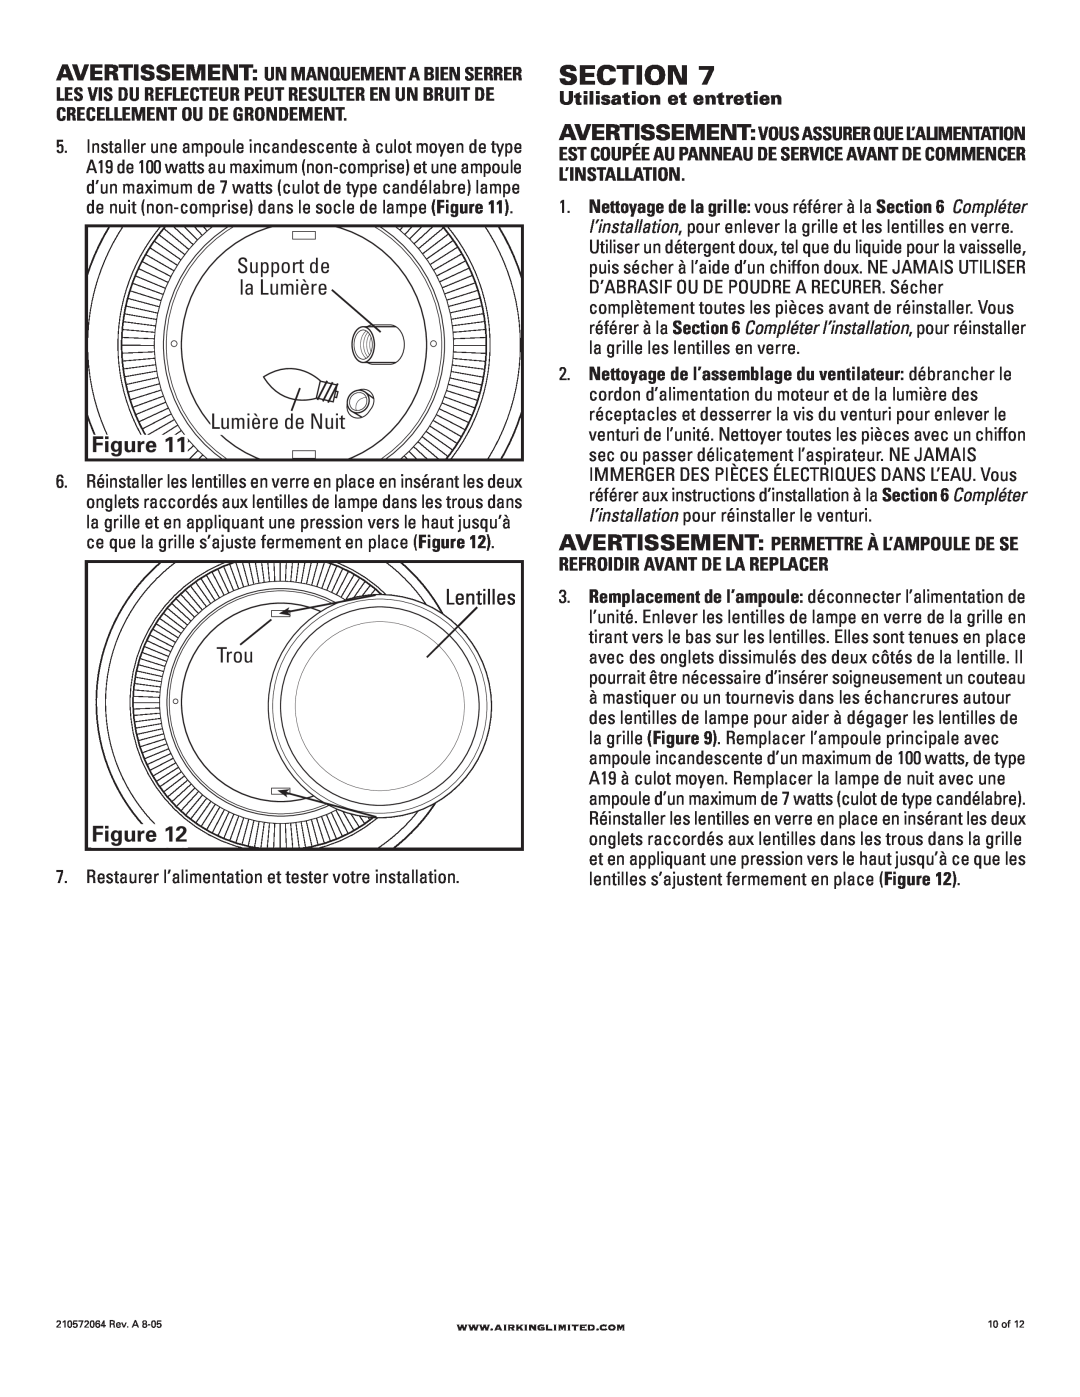 Air King DRLC107 manual Section, Lumière de Nuit, Trou, Support de la Lumière, Lentilles 